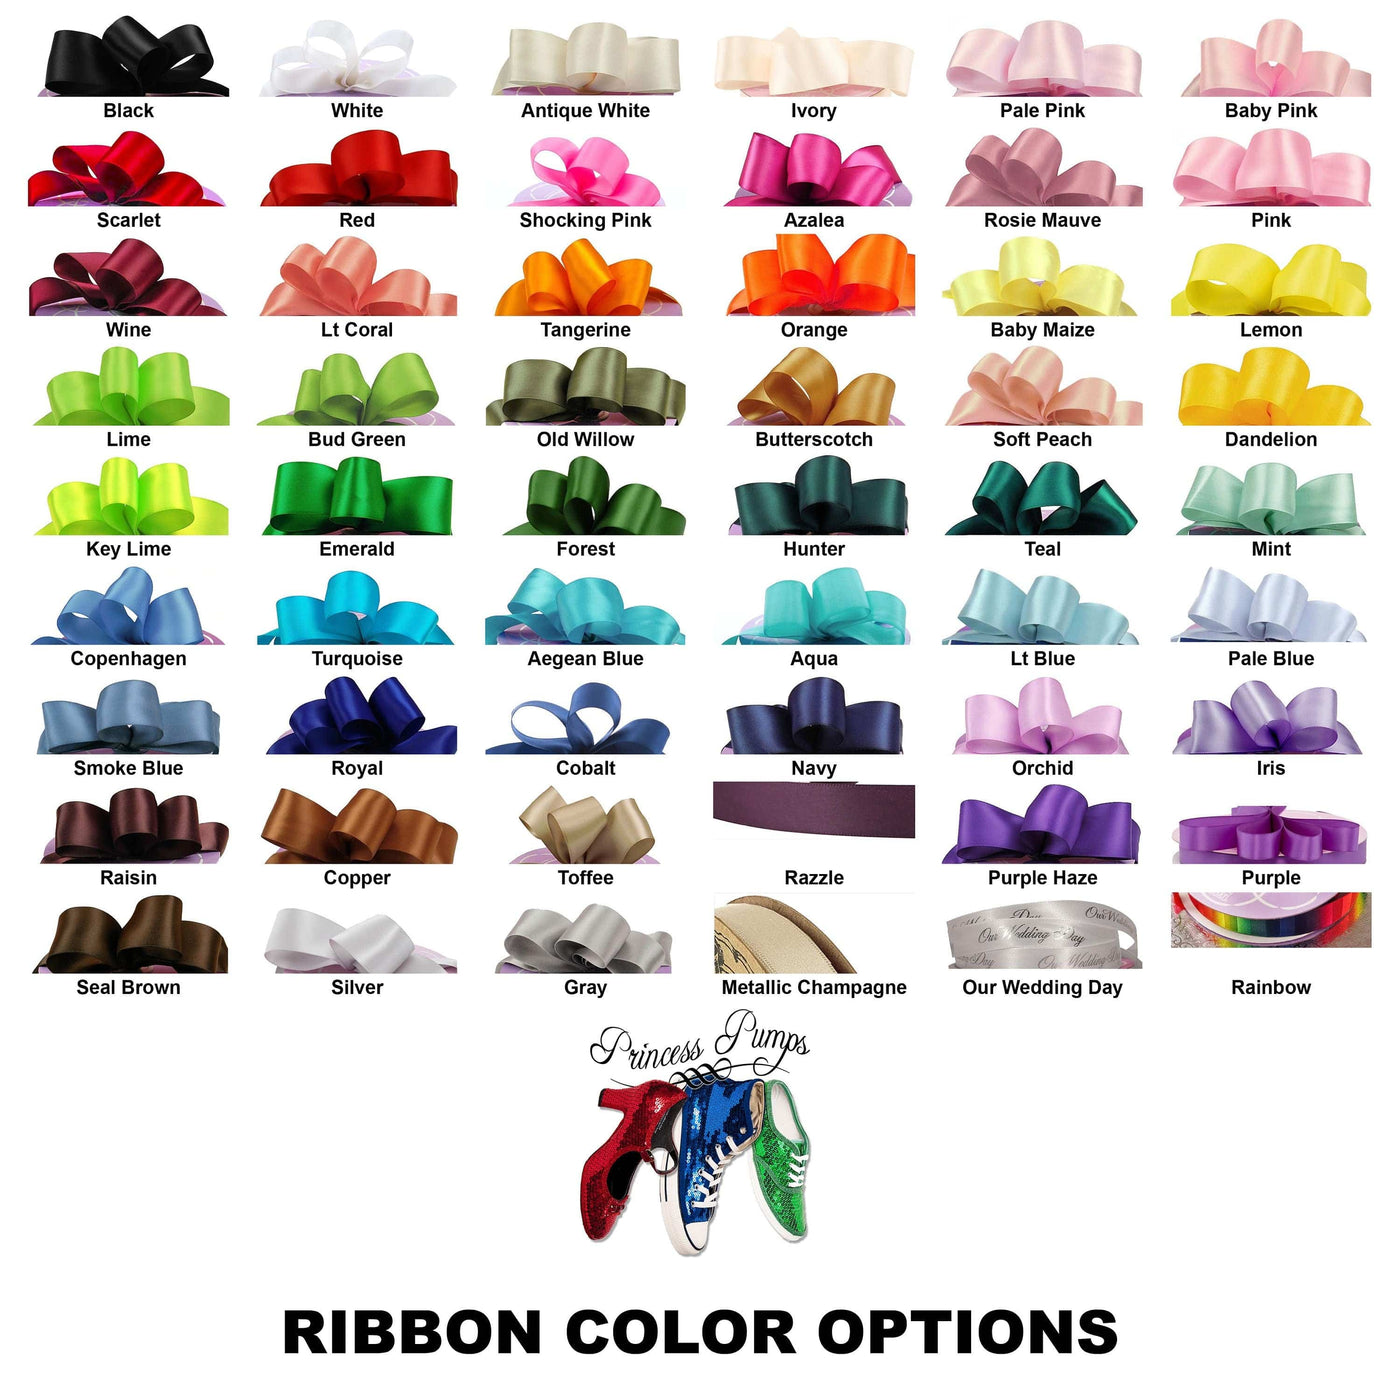 Satin Ribbon 5/8" Premium Quality Shoelaces - 72" Inch Length Surprise Me!